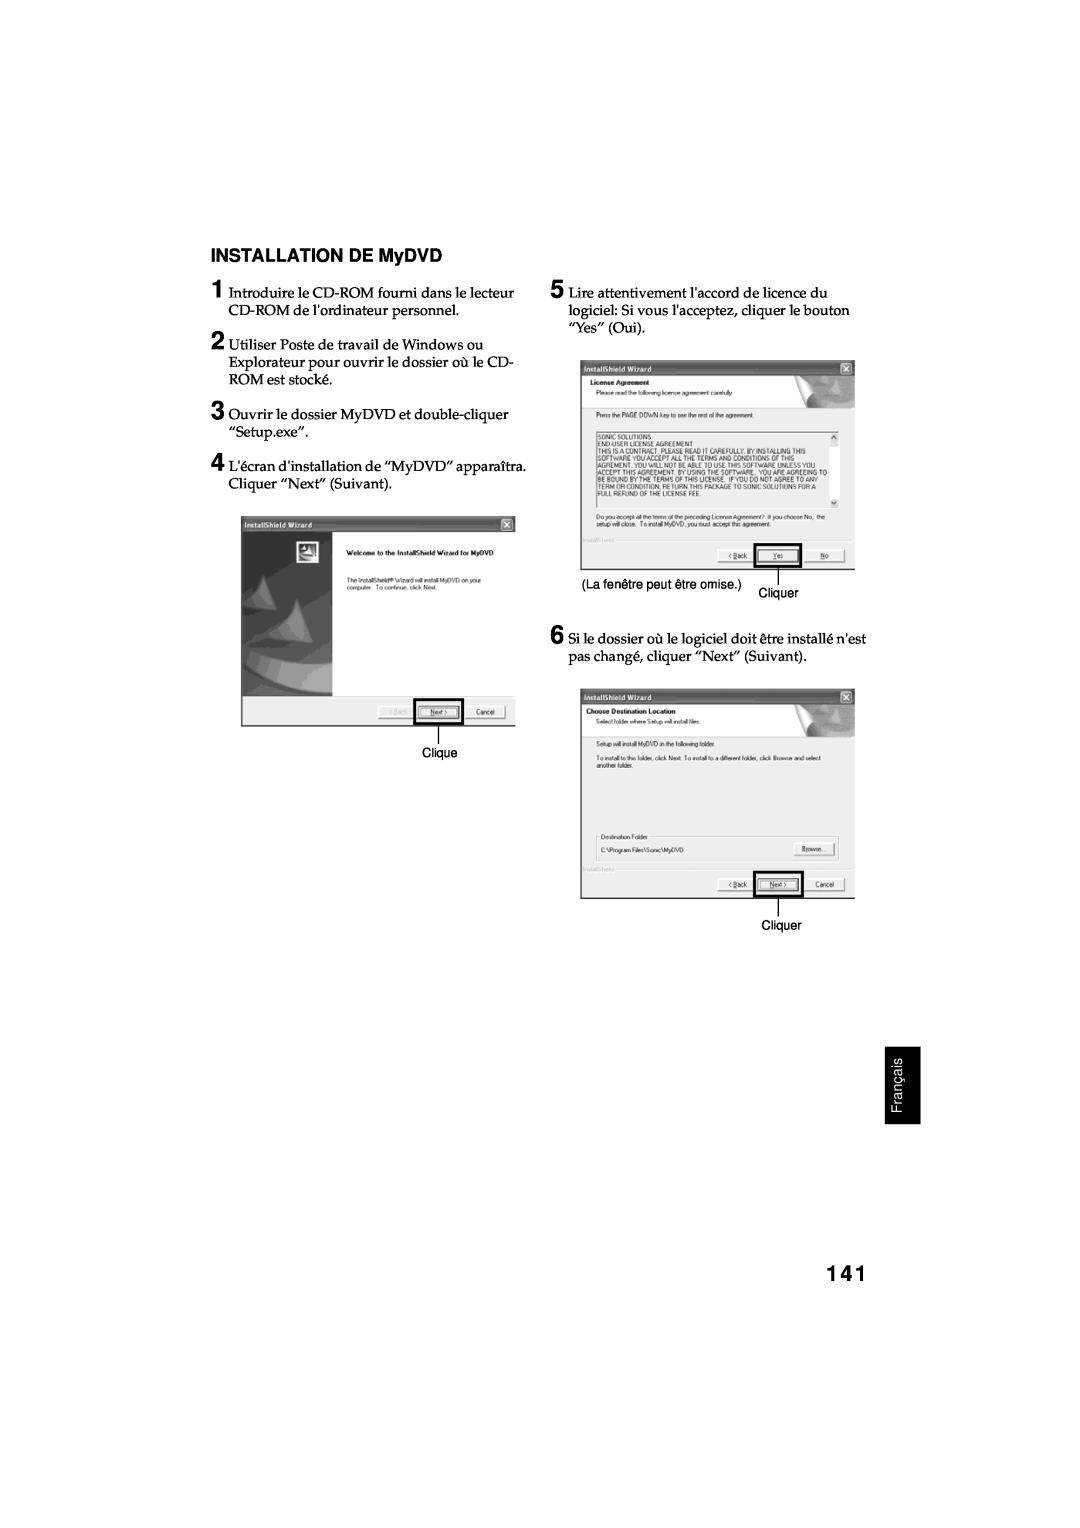 Hitachi DZ-MV380A manual INSTALLATION DE MyDVD, Français, La fenêtre peut être omise Cliquer, Clique Cliquer 